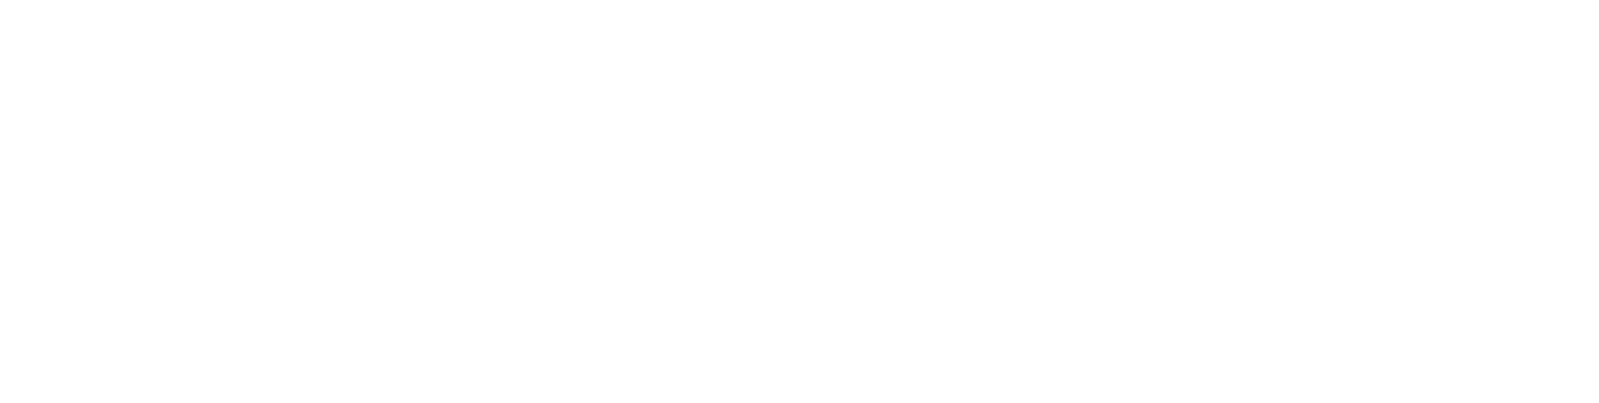 Dolby logo large for dark backgrounds (transparent PNG)